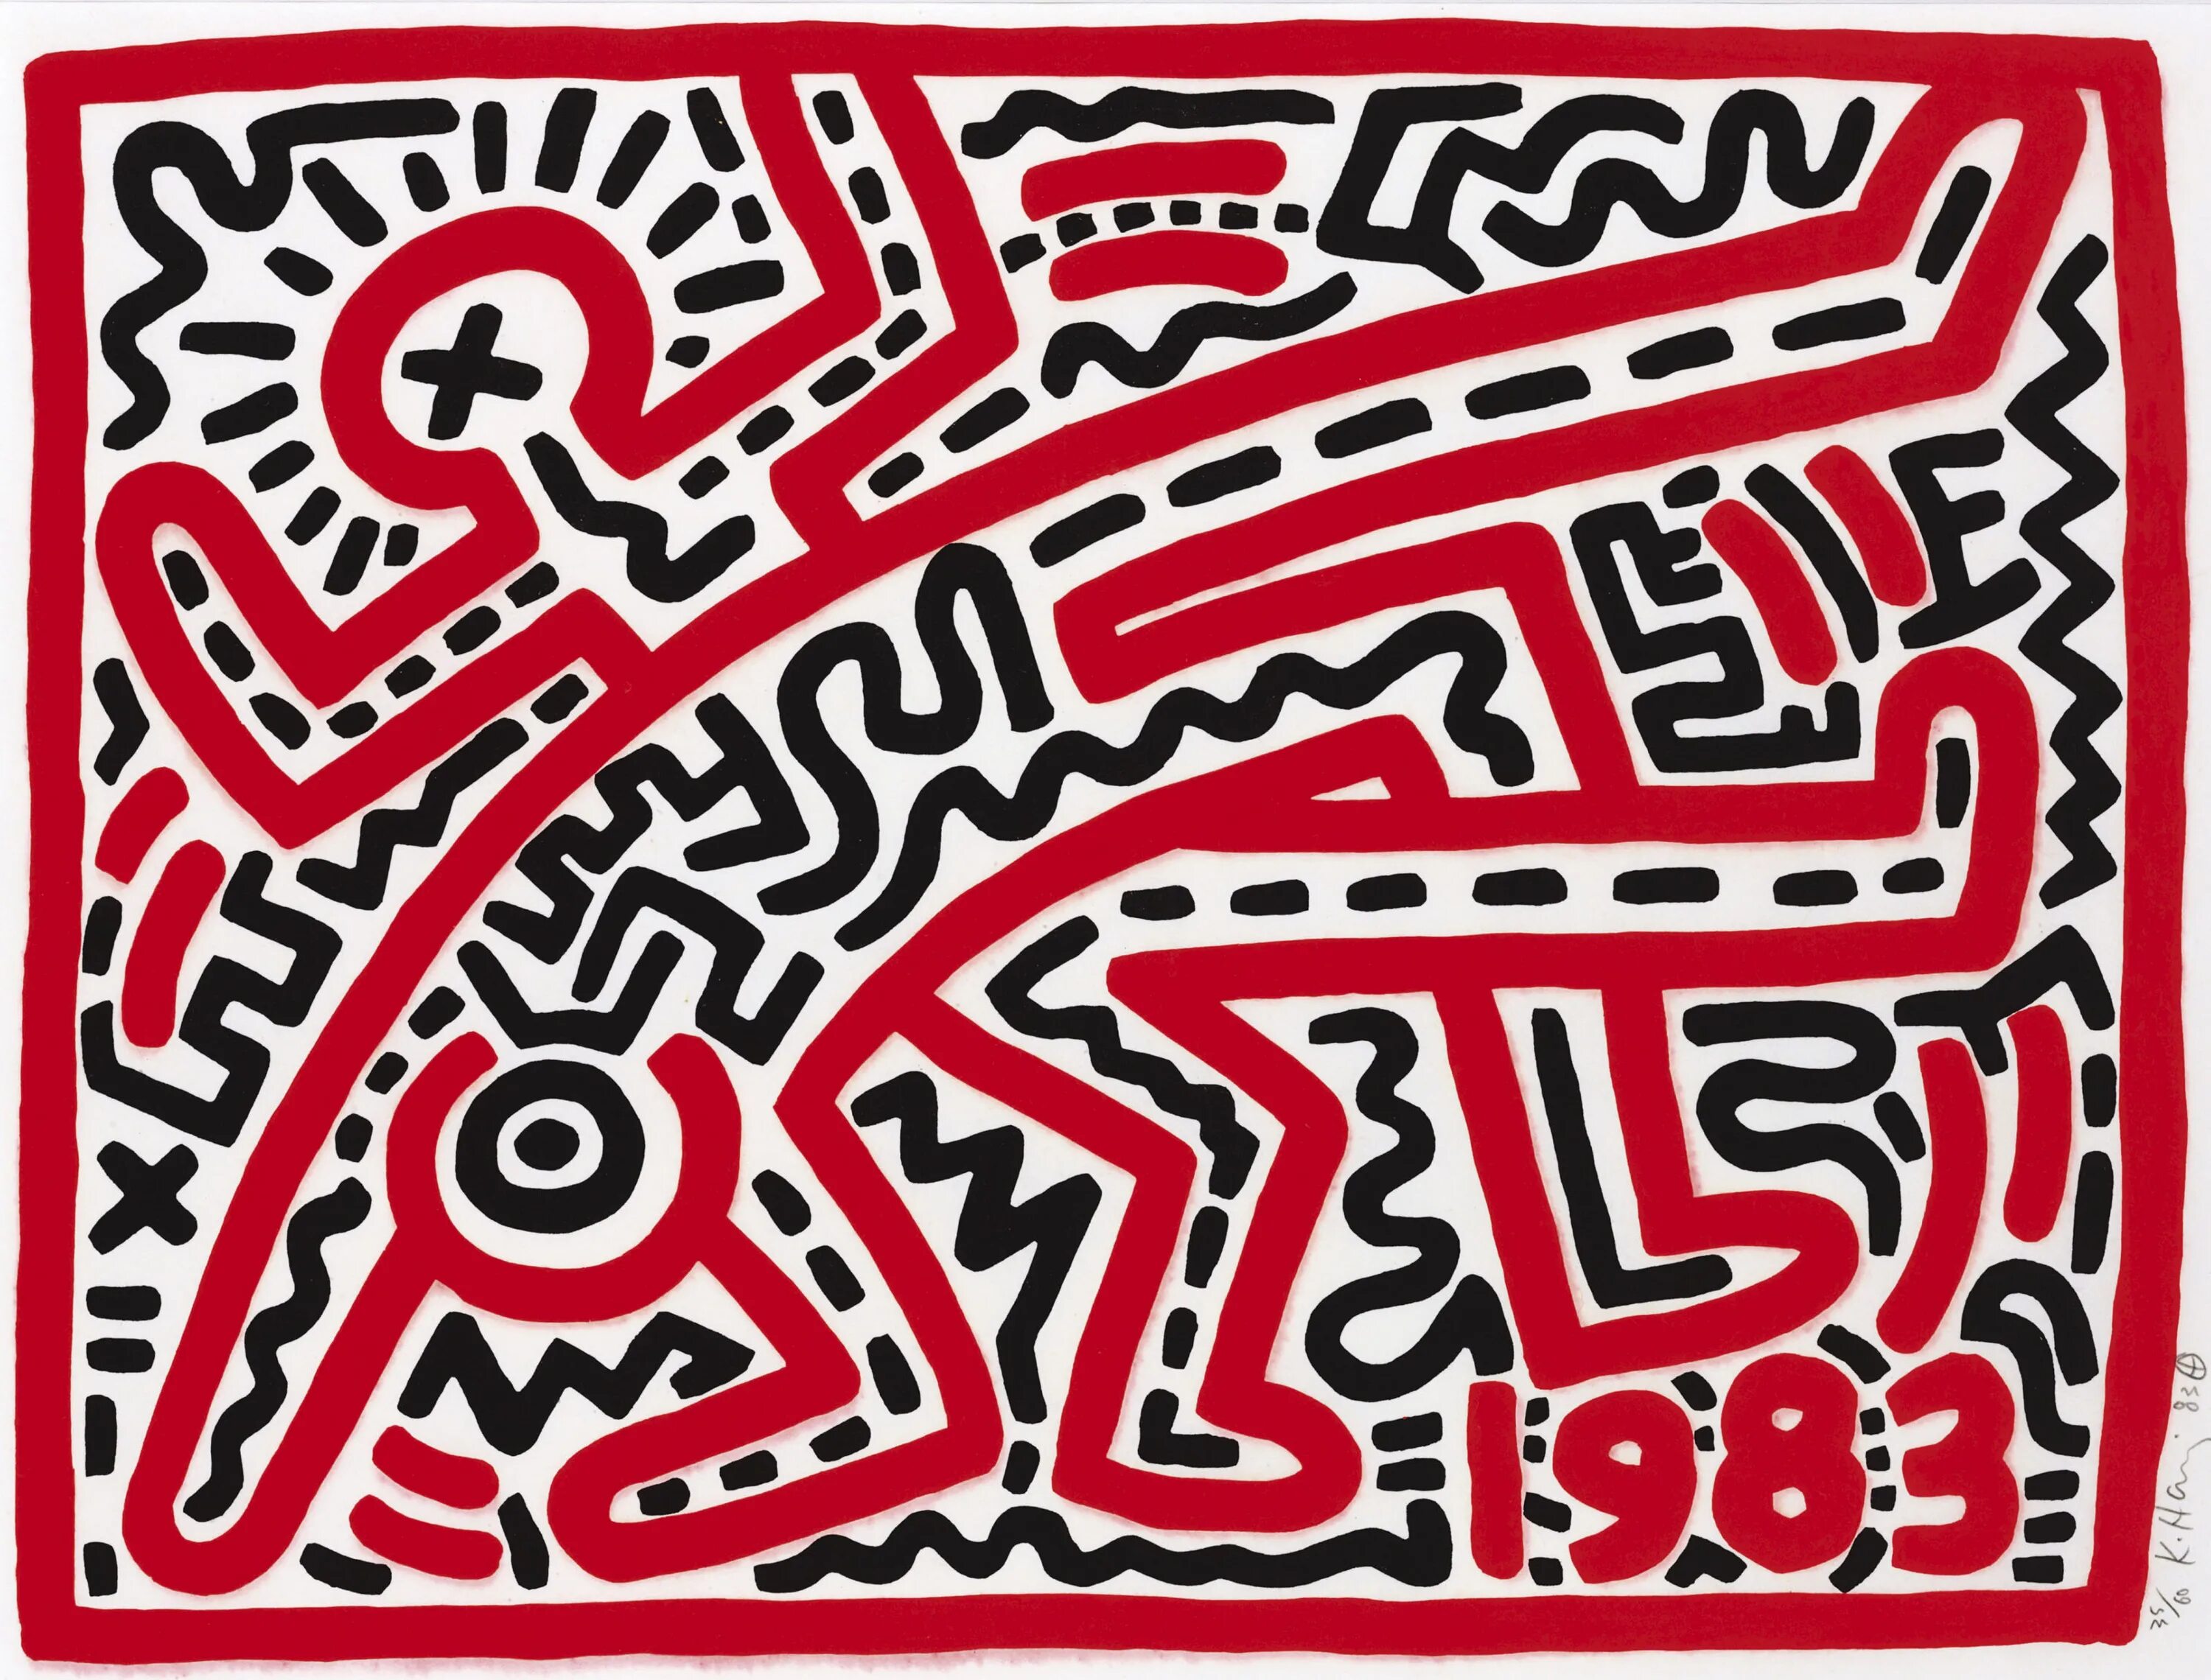 Кит харинг произведения. Keith Haring художник. Кит Харинг 1990. Кит Харинг Labyrinth. Картины кита харинга.